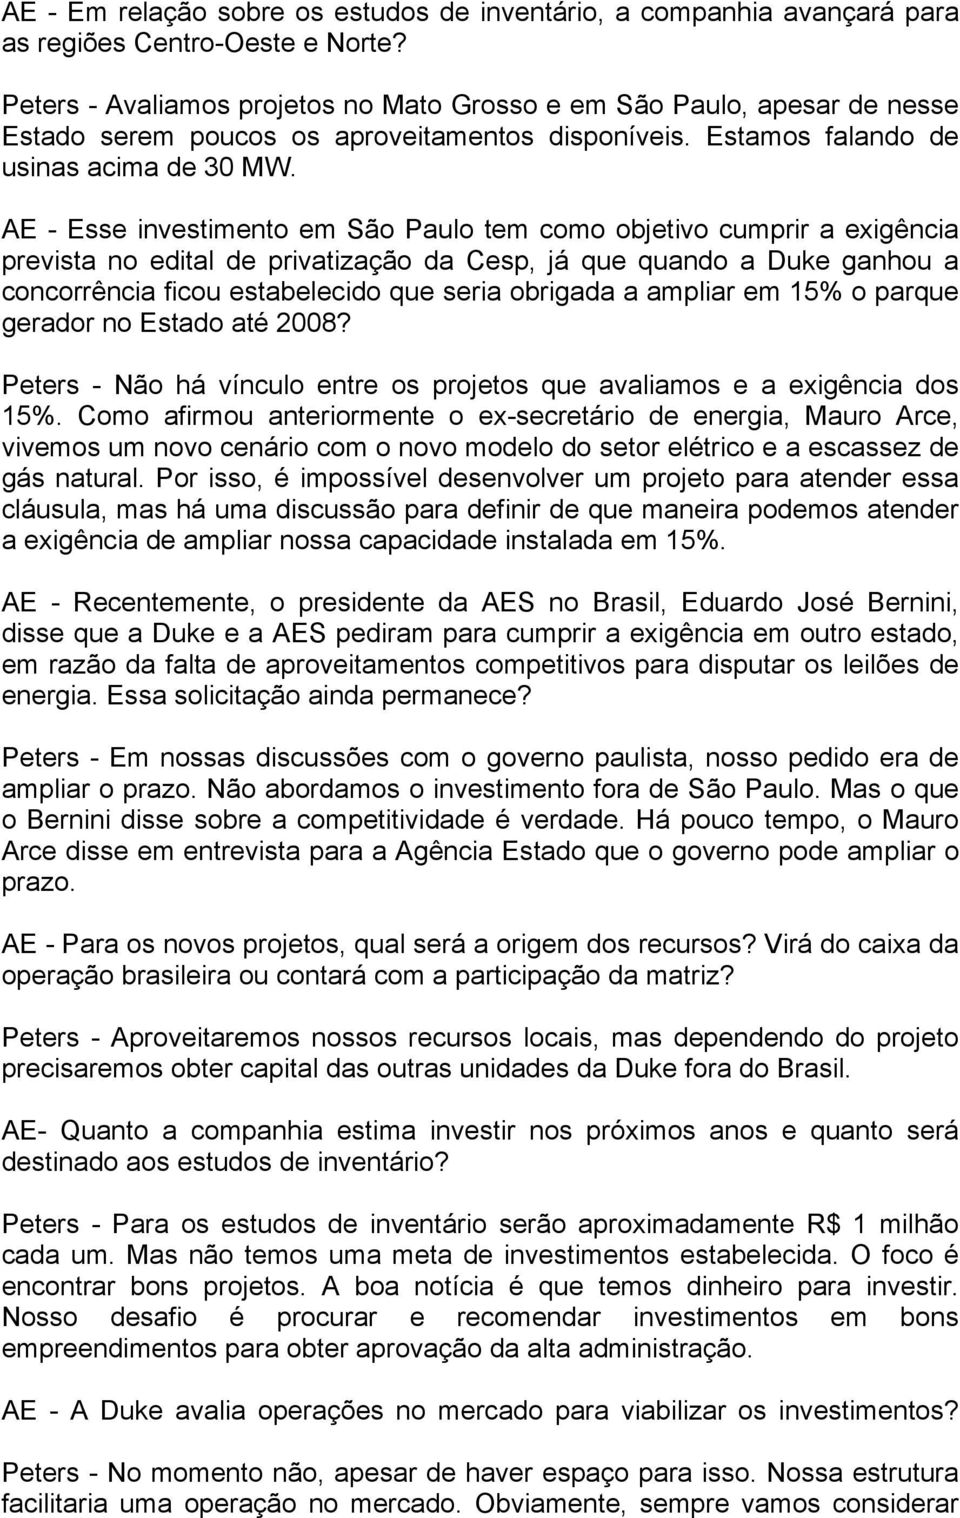 AE - Esse investimento em São Paulo tem como objetivo cumprir a exigência prevista no edital de privatização da Cesp, já que quando a Duke ganhou a concorrência ficou estabelecido que seria obrigada